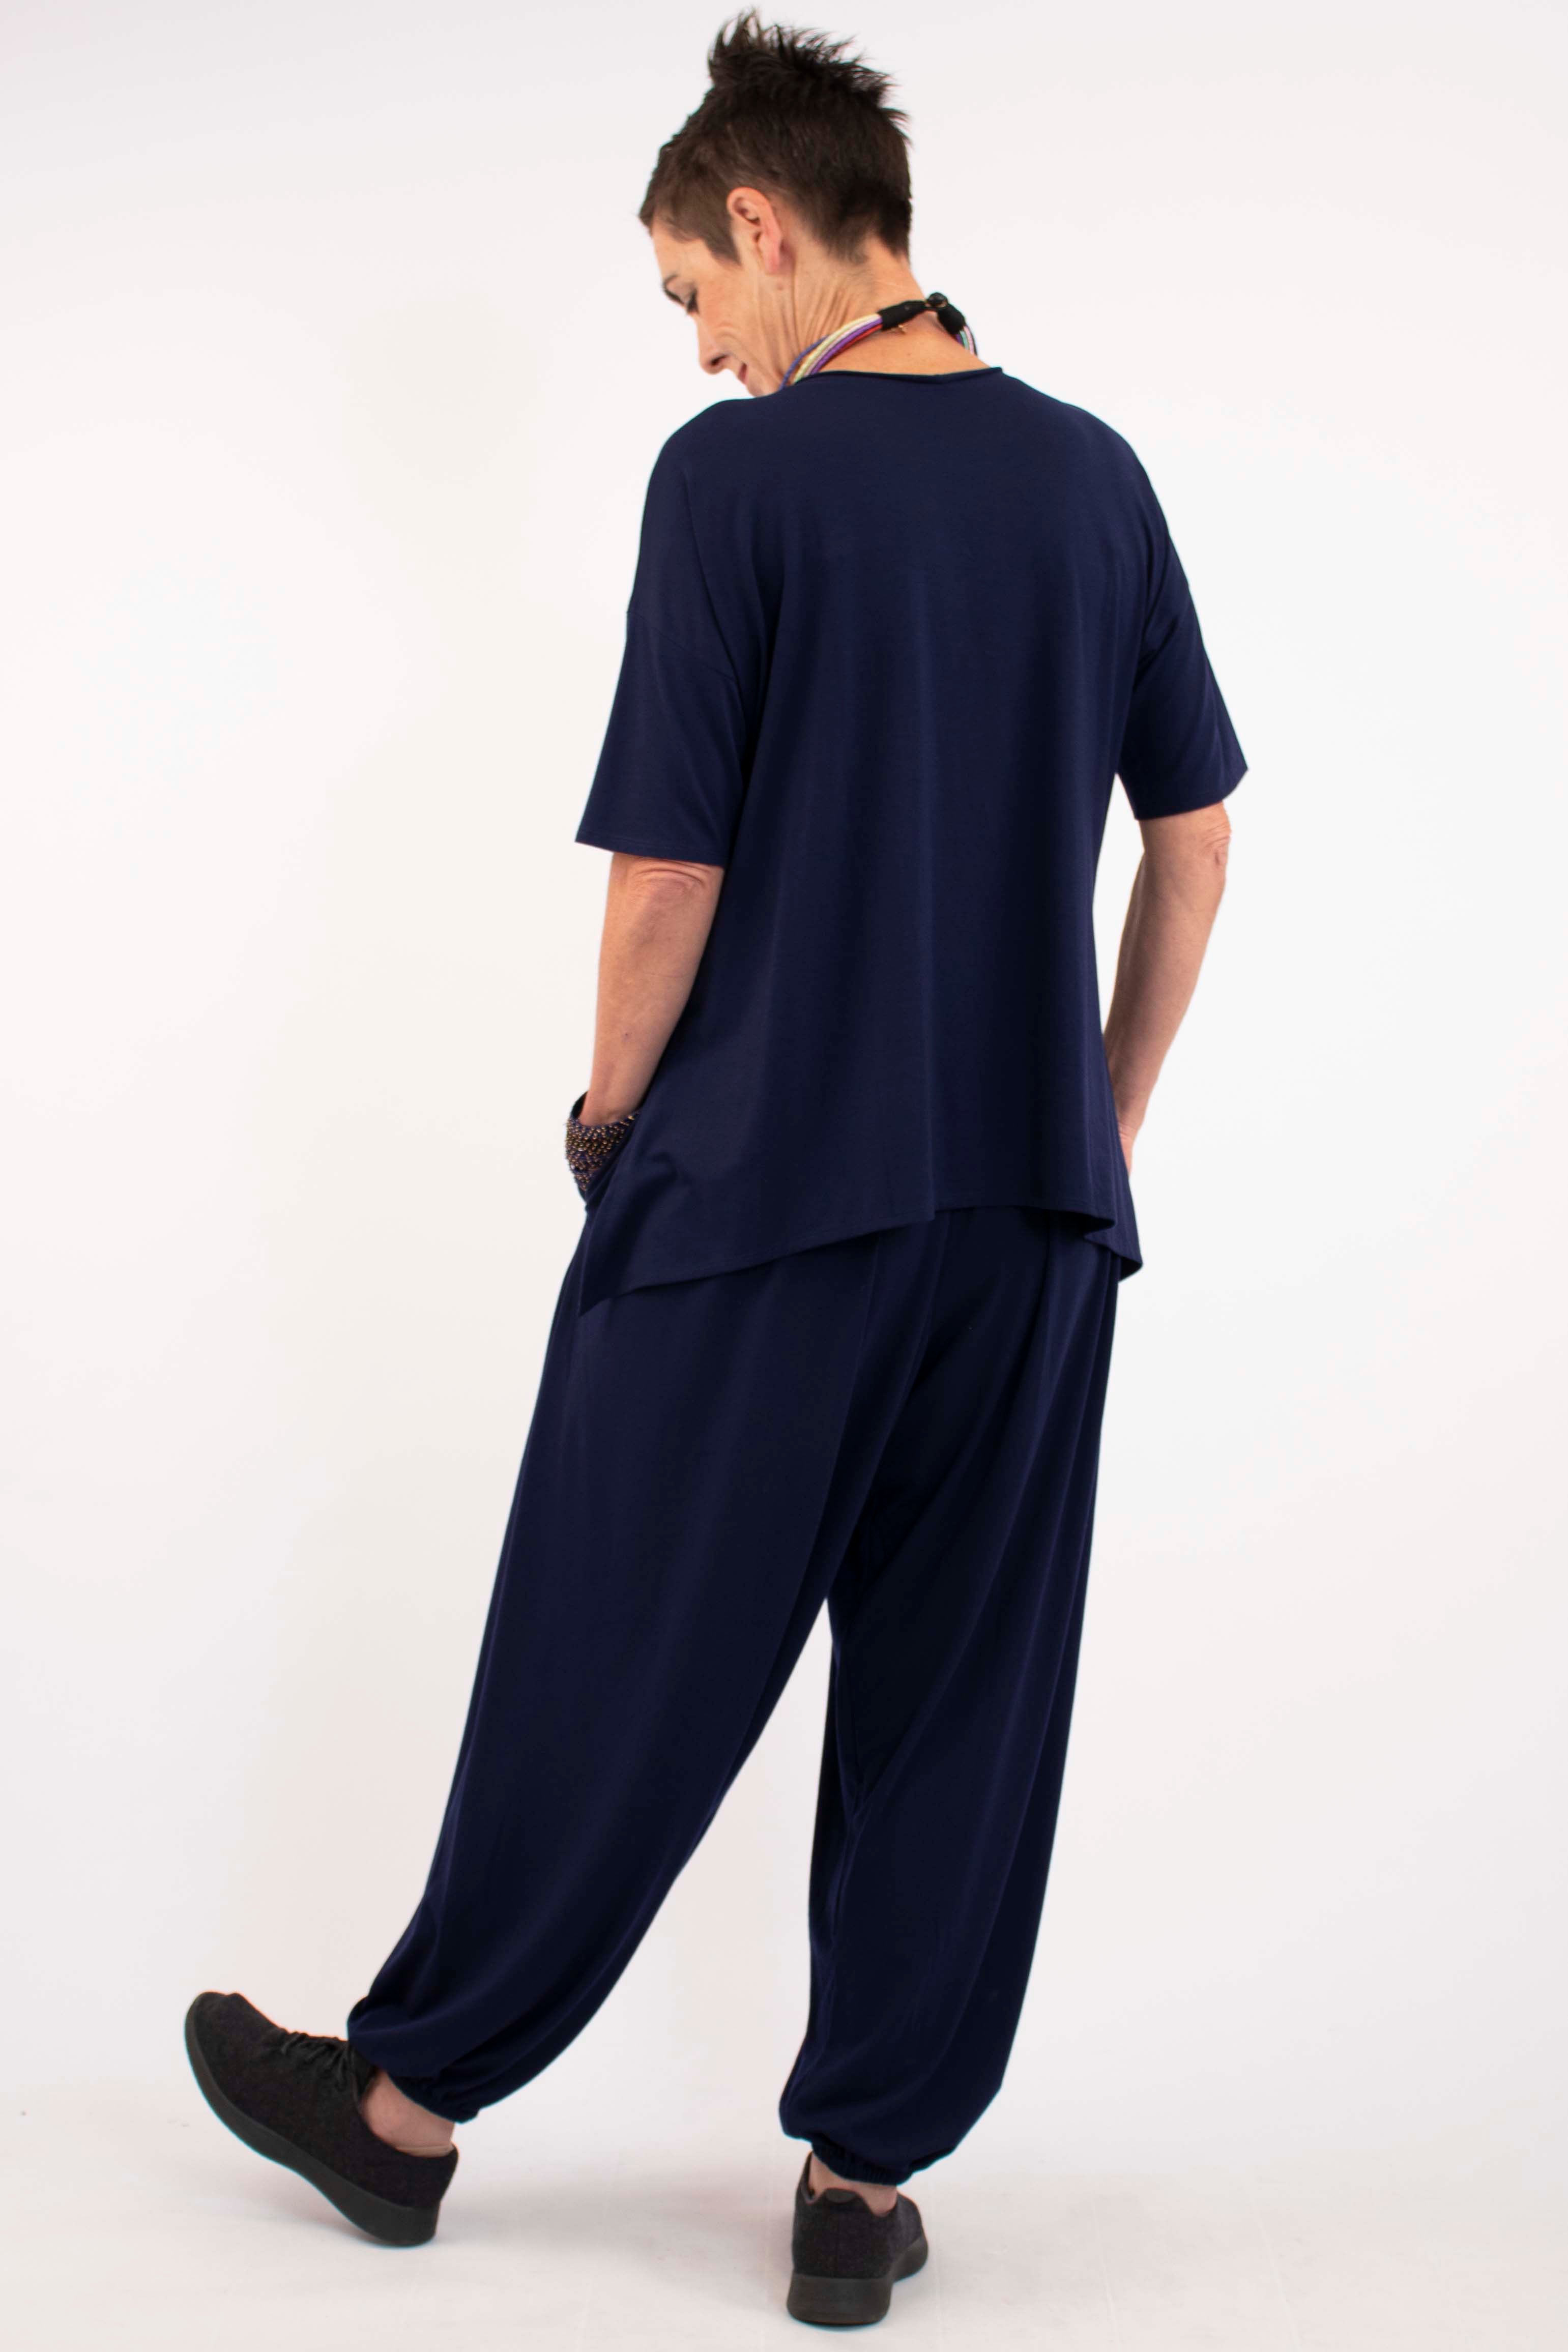 active-wear-t-shirt-navy-track-suit-shop-online-australia-womens-fashion-plus-size